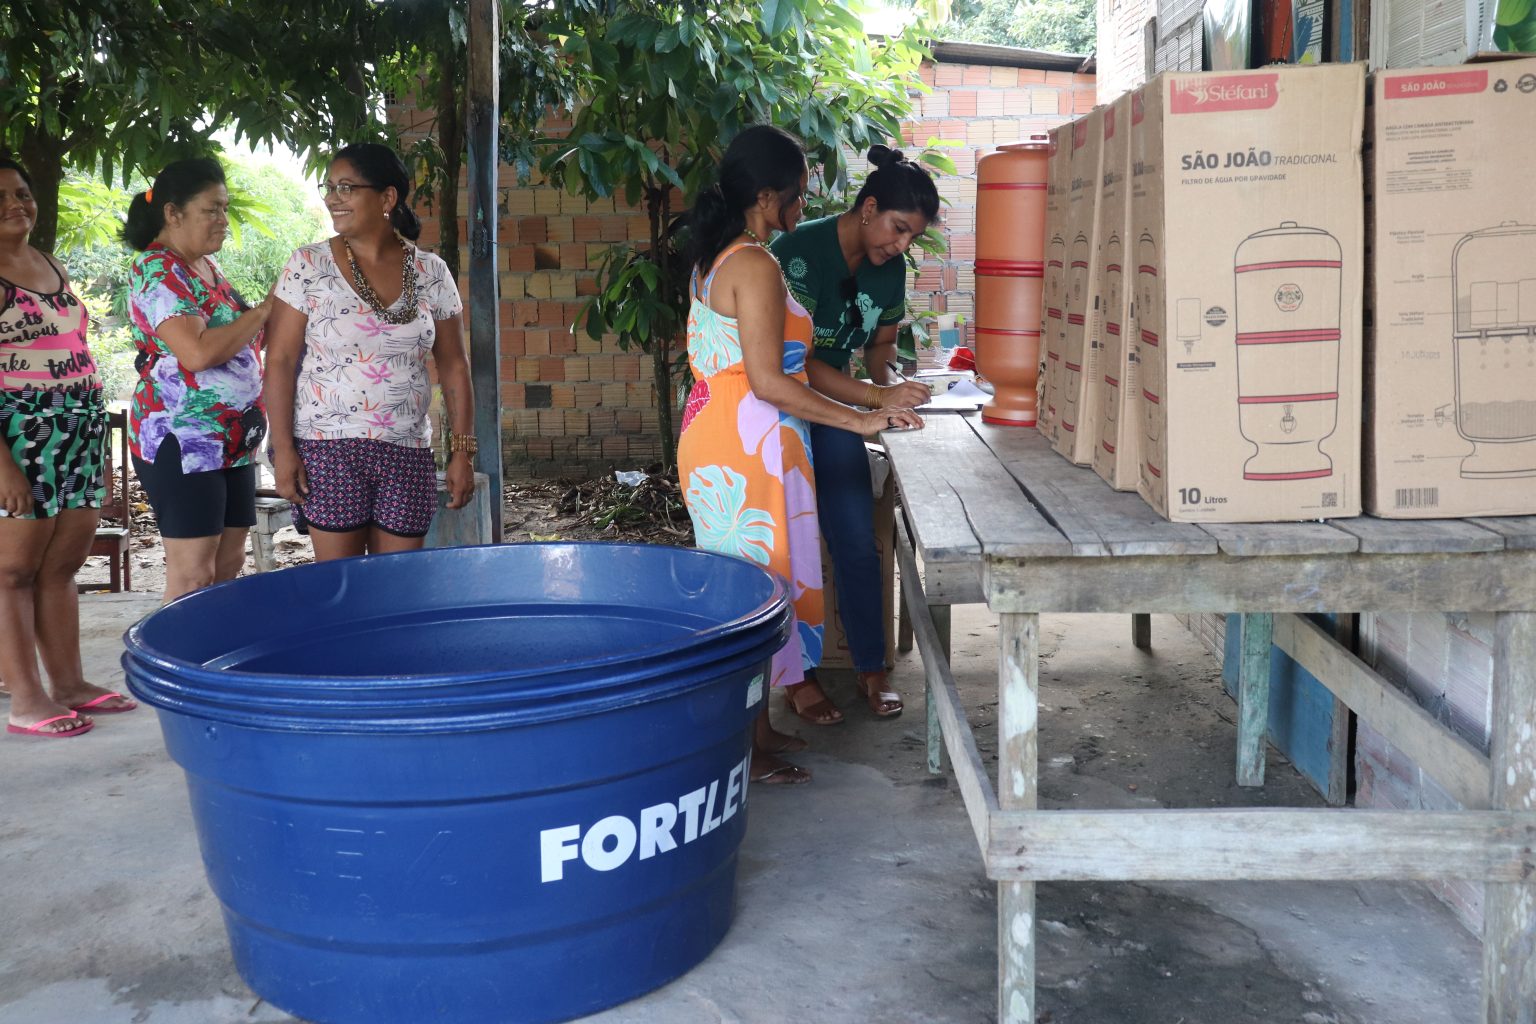 Campanha “Amazônia tem sede!” conclui entrega de kits de água potável para povos ribeirinhos e indígenas